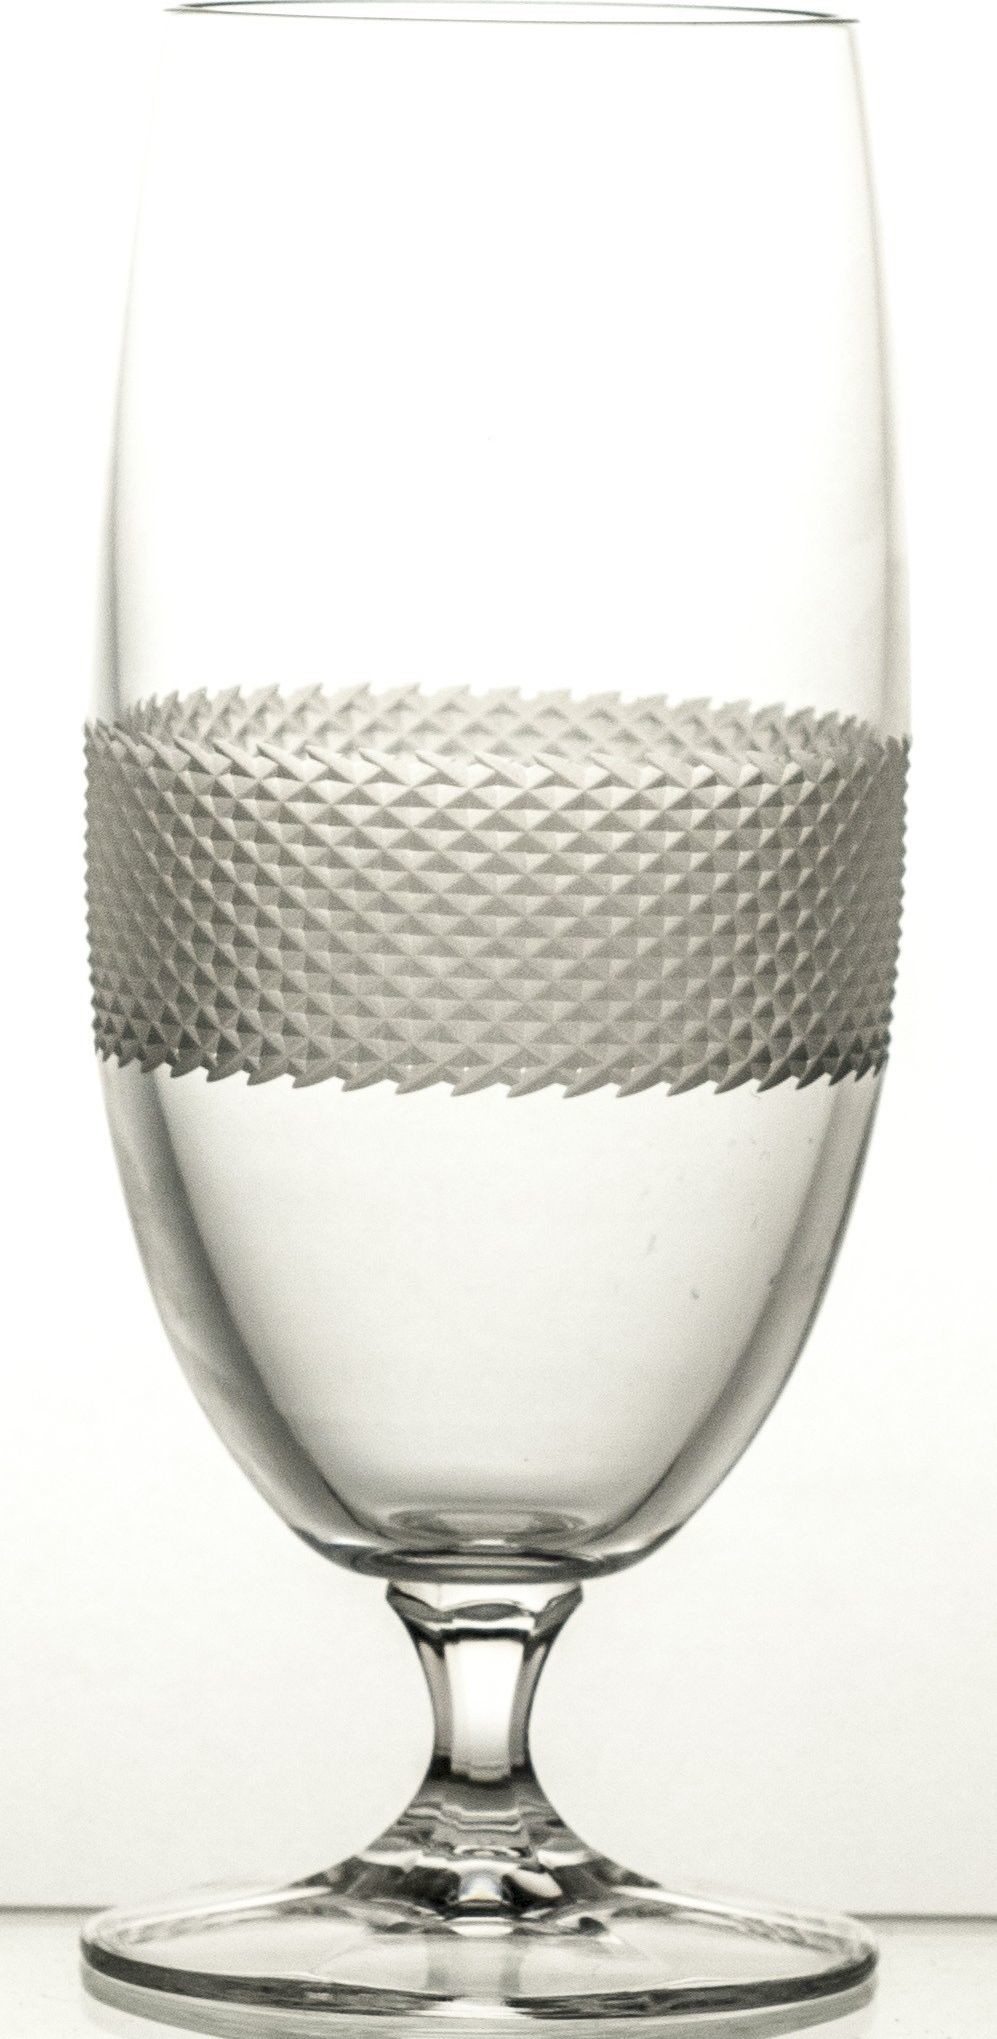 Crystaljulia Pokale kieliszki do piwa kryształowe 6 sztuk Satine 10241 10241